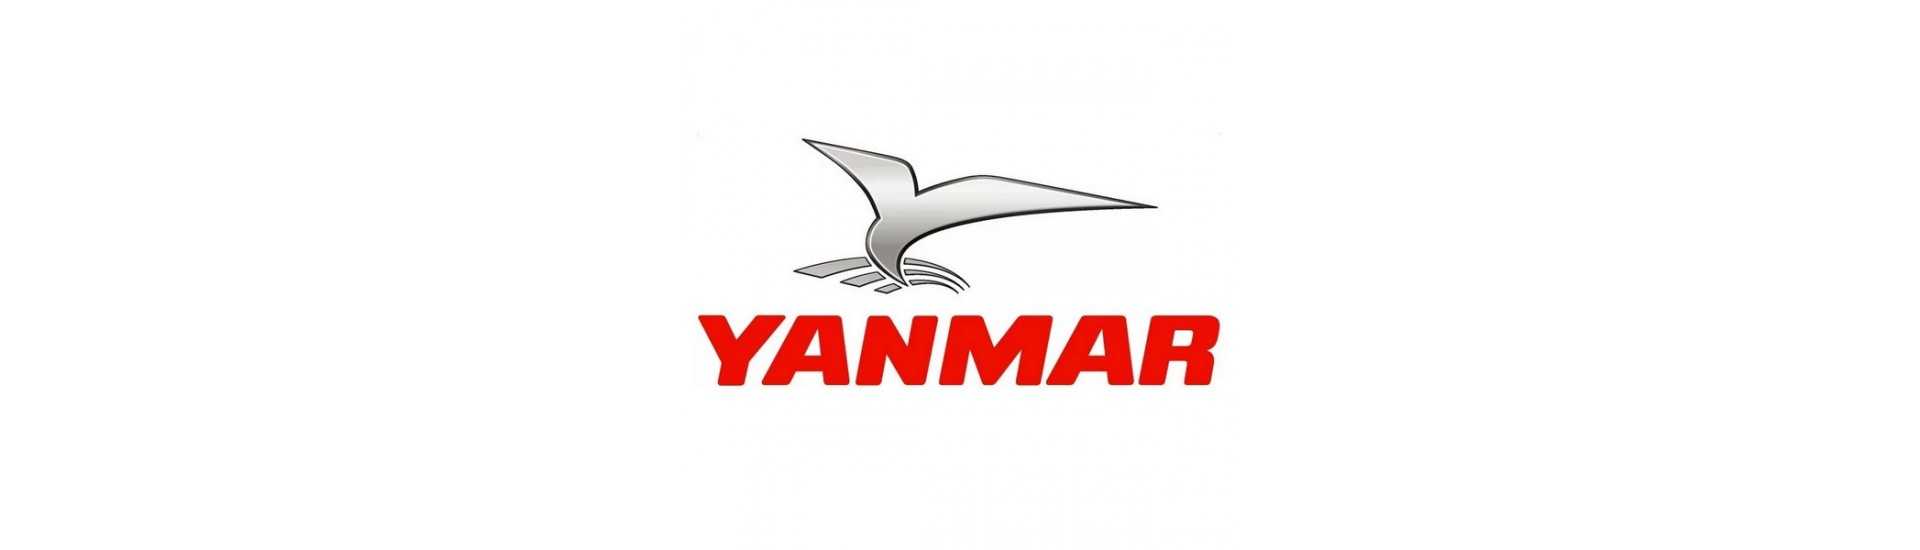 Pièces occasion moteur Yanmar au meilleur prix